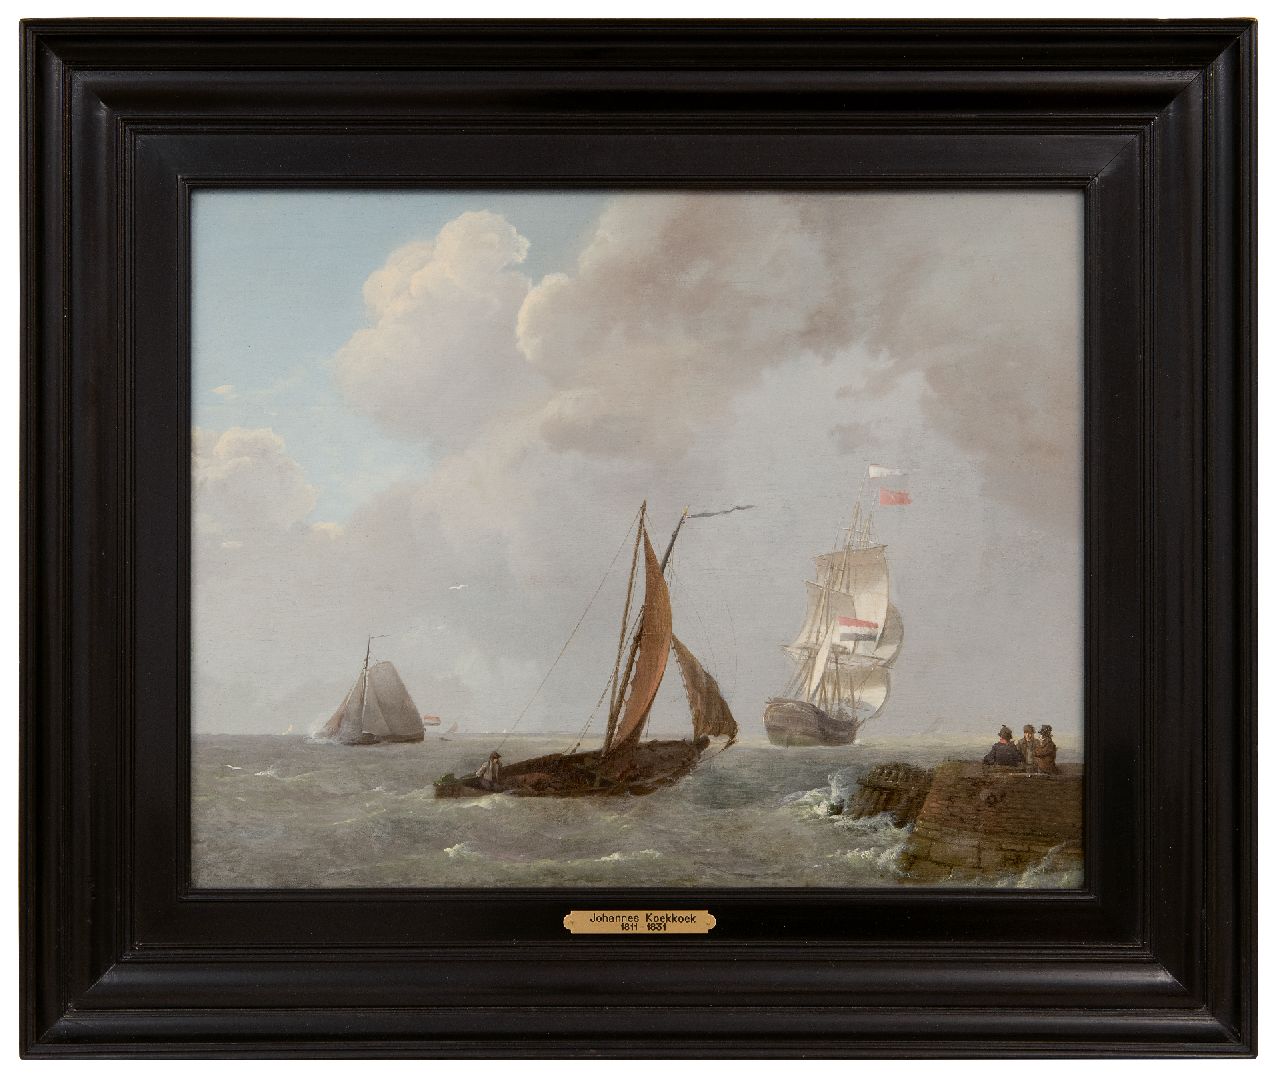 Koekkoek J.  | Johannes Koekkoek | Schilderijen te koop aangeboden | Laverende zeilschepen in de Zeeuwse wateren, olieverf op paneel 30,0 x 38,9 cm, gesigneerd rechtsonder en gedateerd 1829